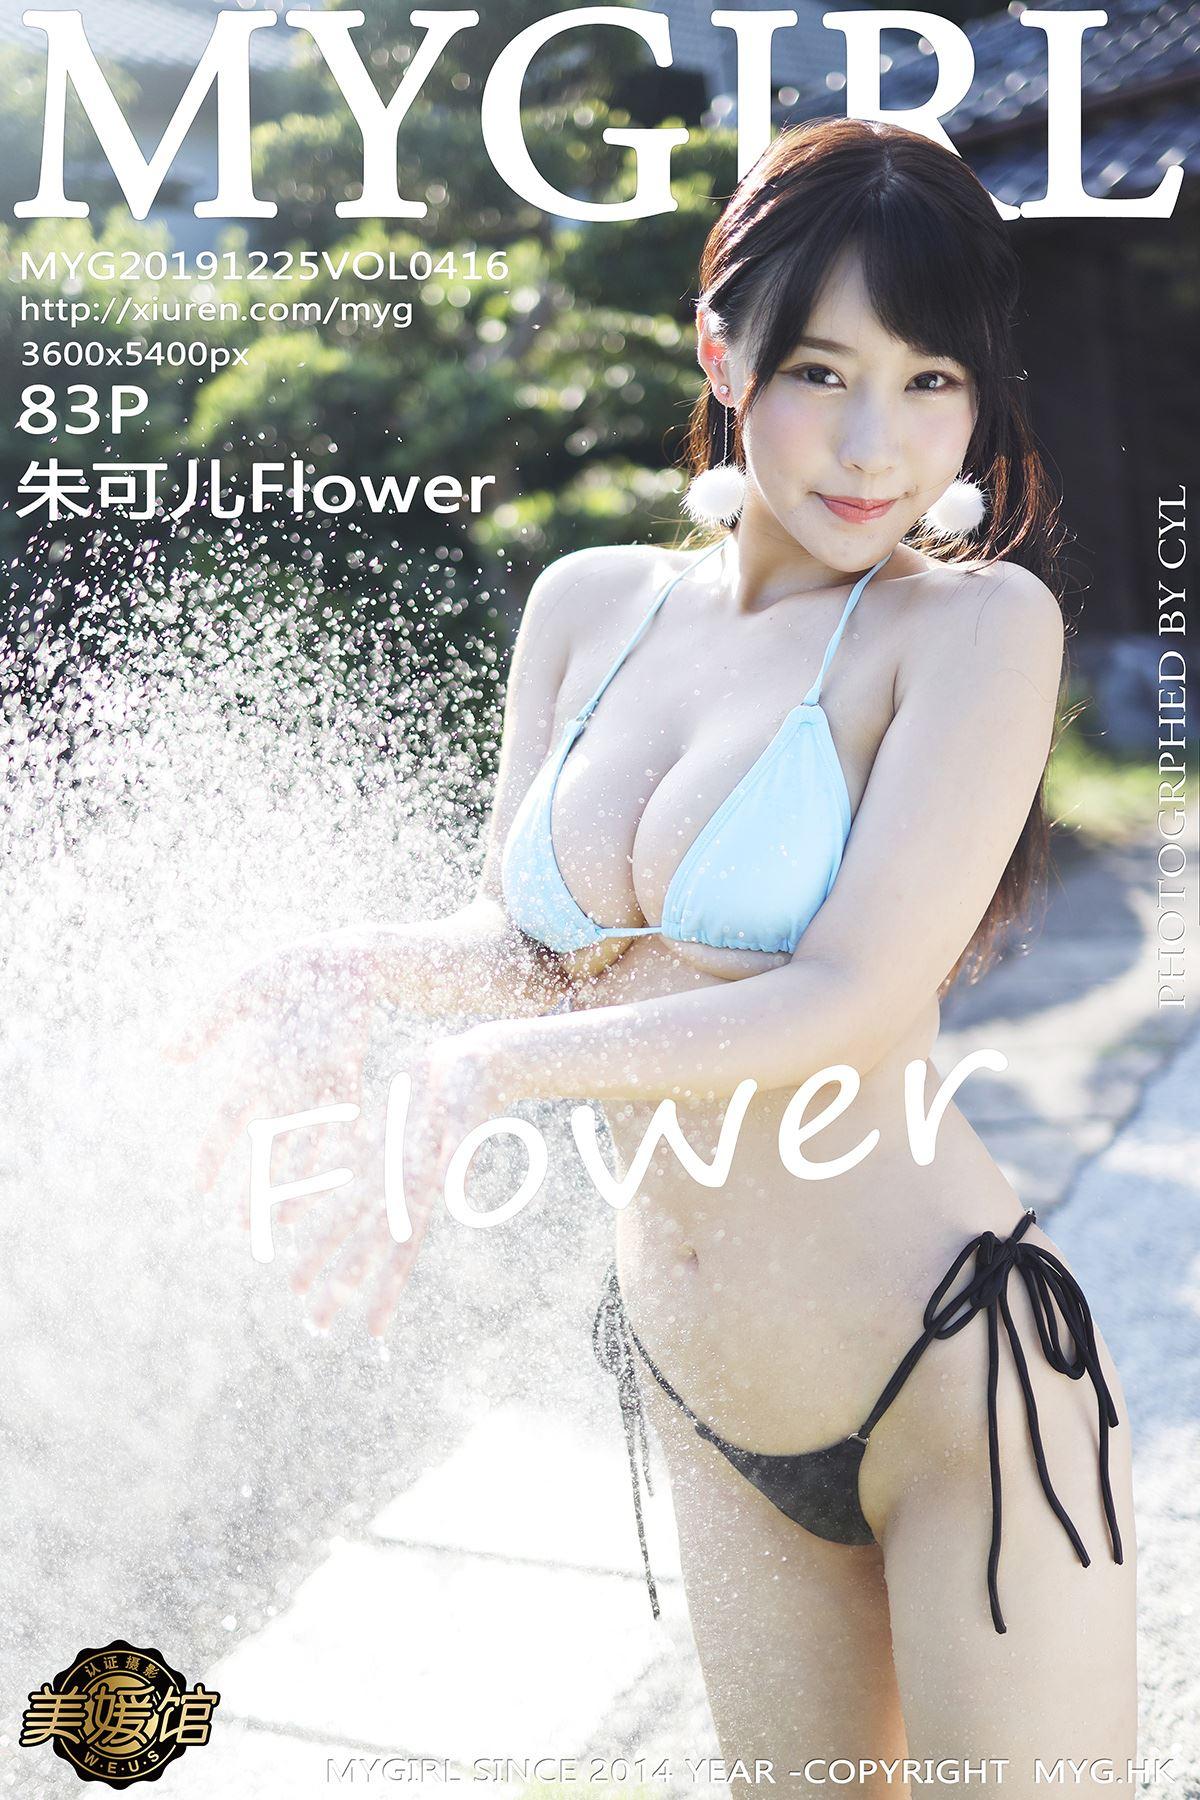 MyGirl 美媛馆 2019.12.26 Vol.416 朱可儿Flower - 81.jpg